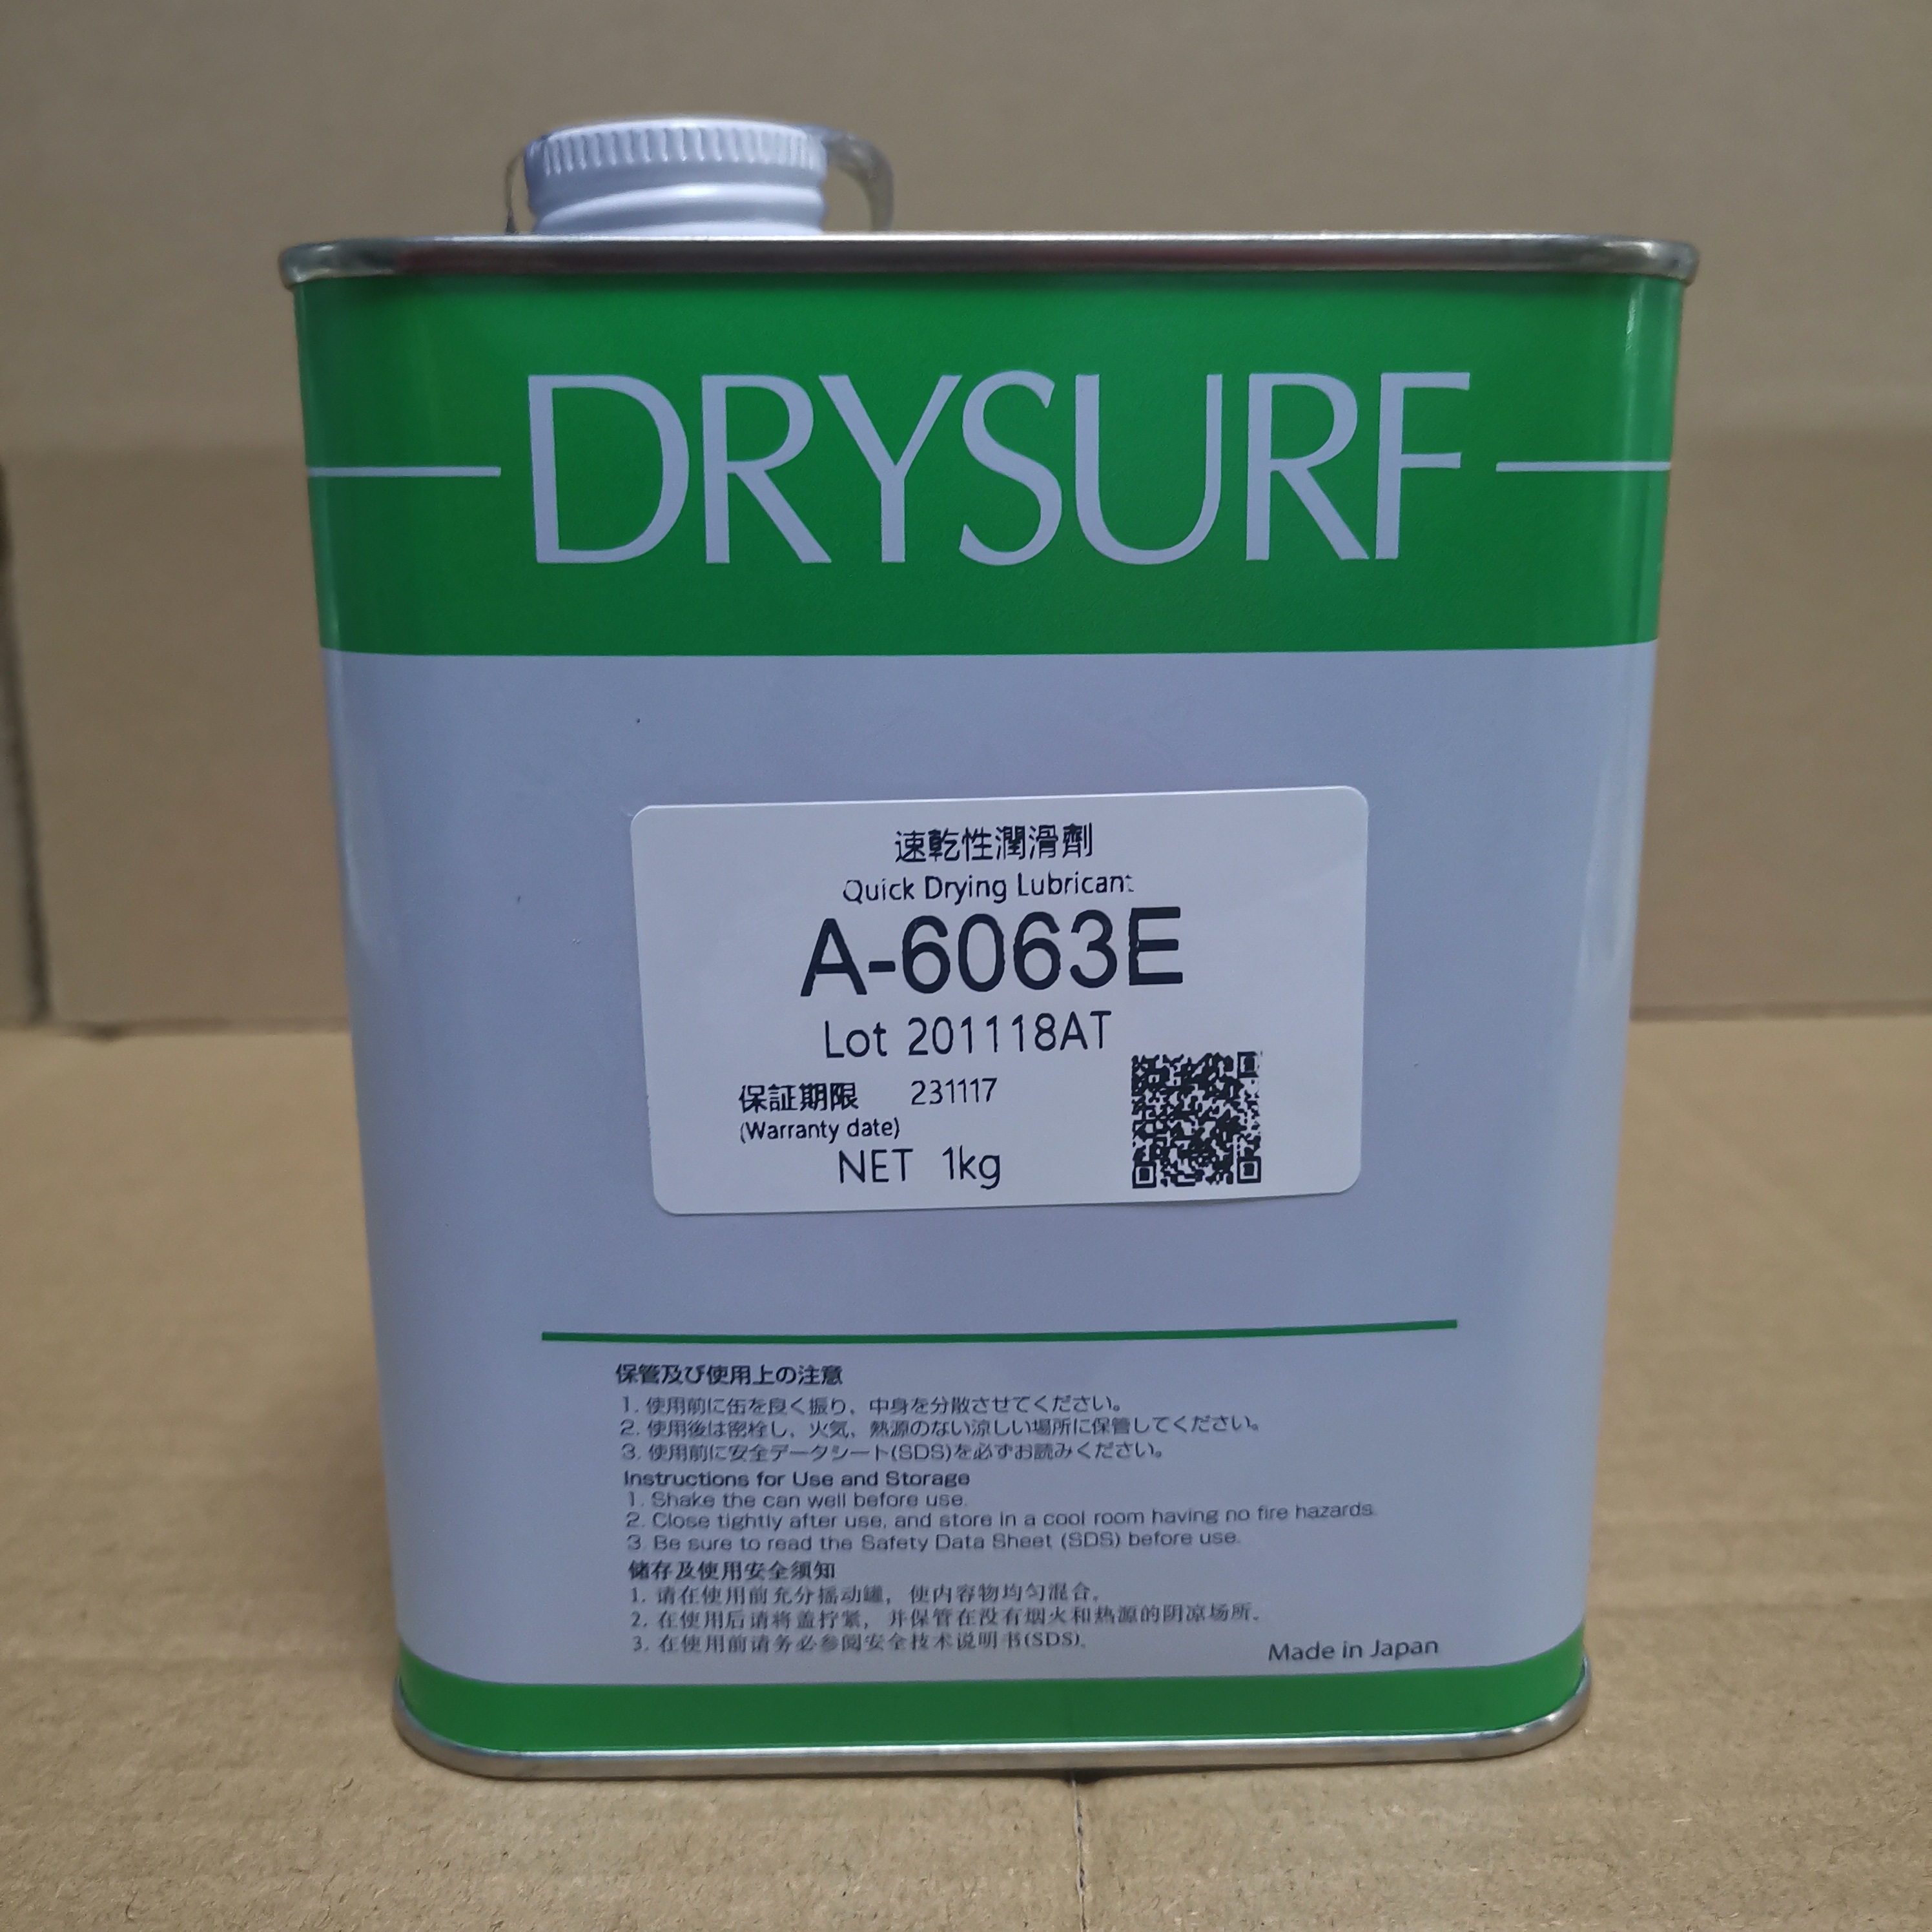 哈维斯DRYSURFA-6063E 干膜润滑剂